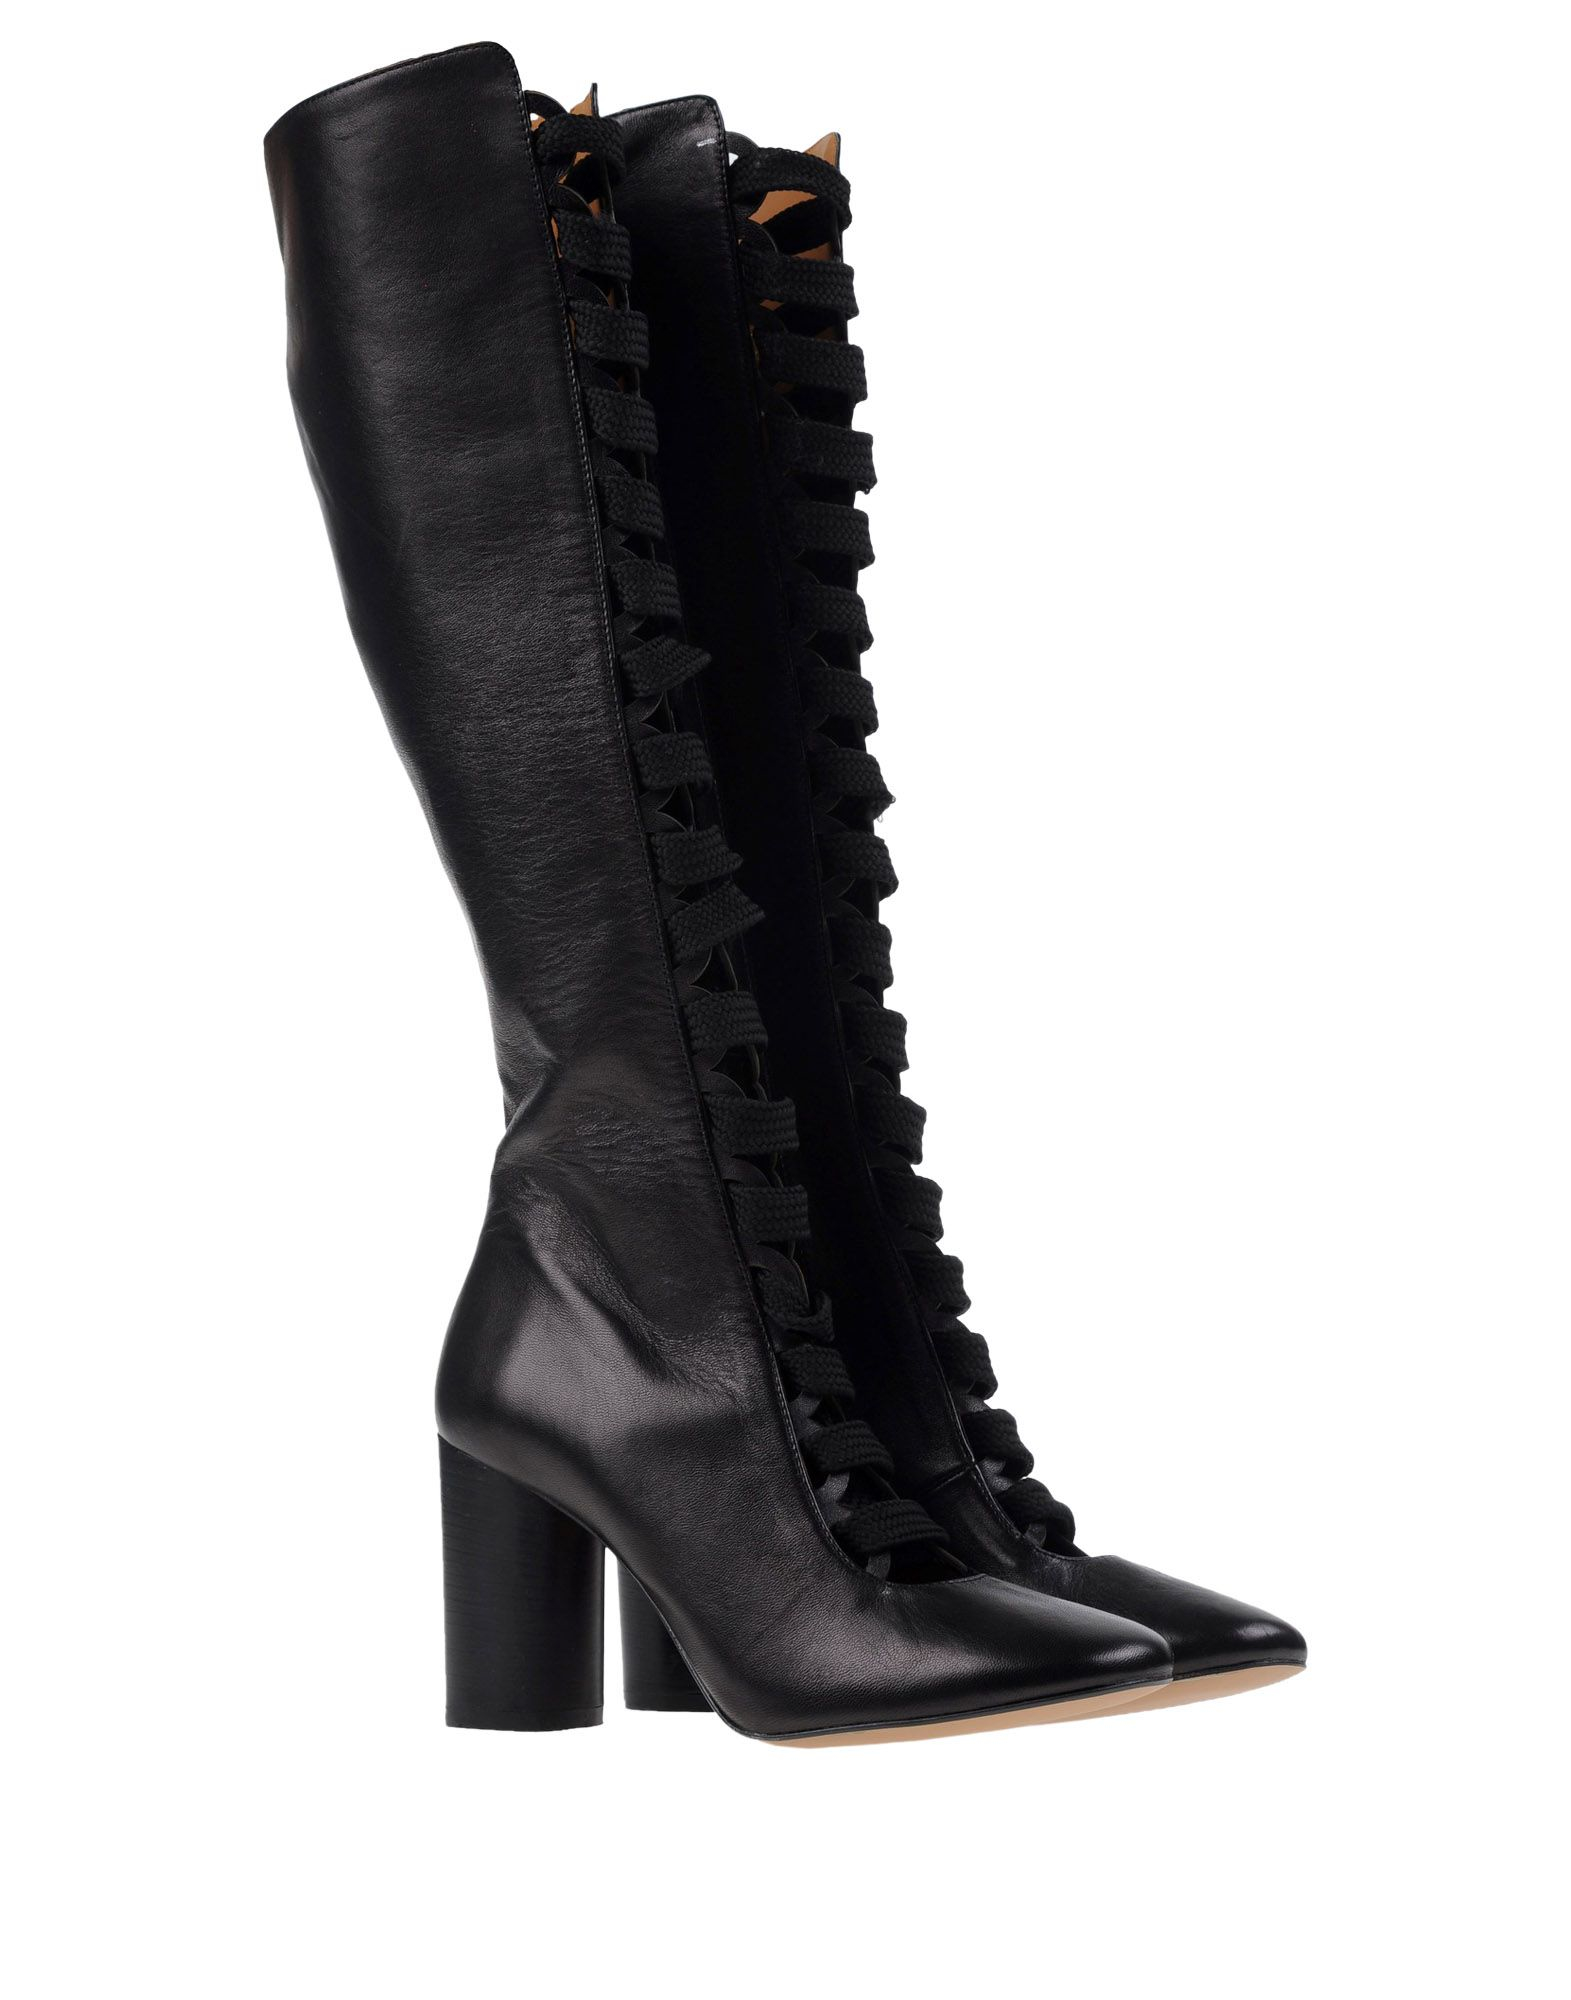 Lyst - Bianca Di Boots in Black